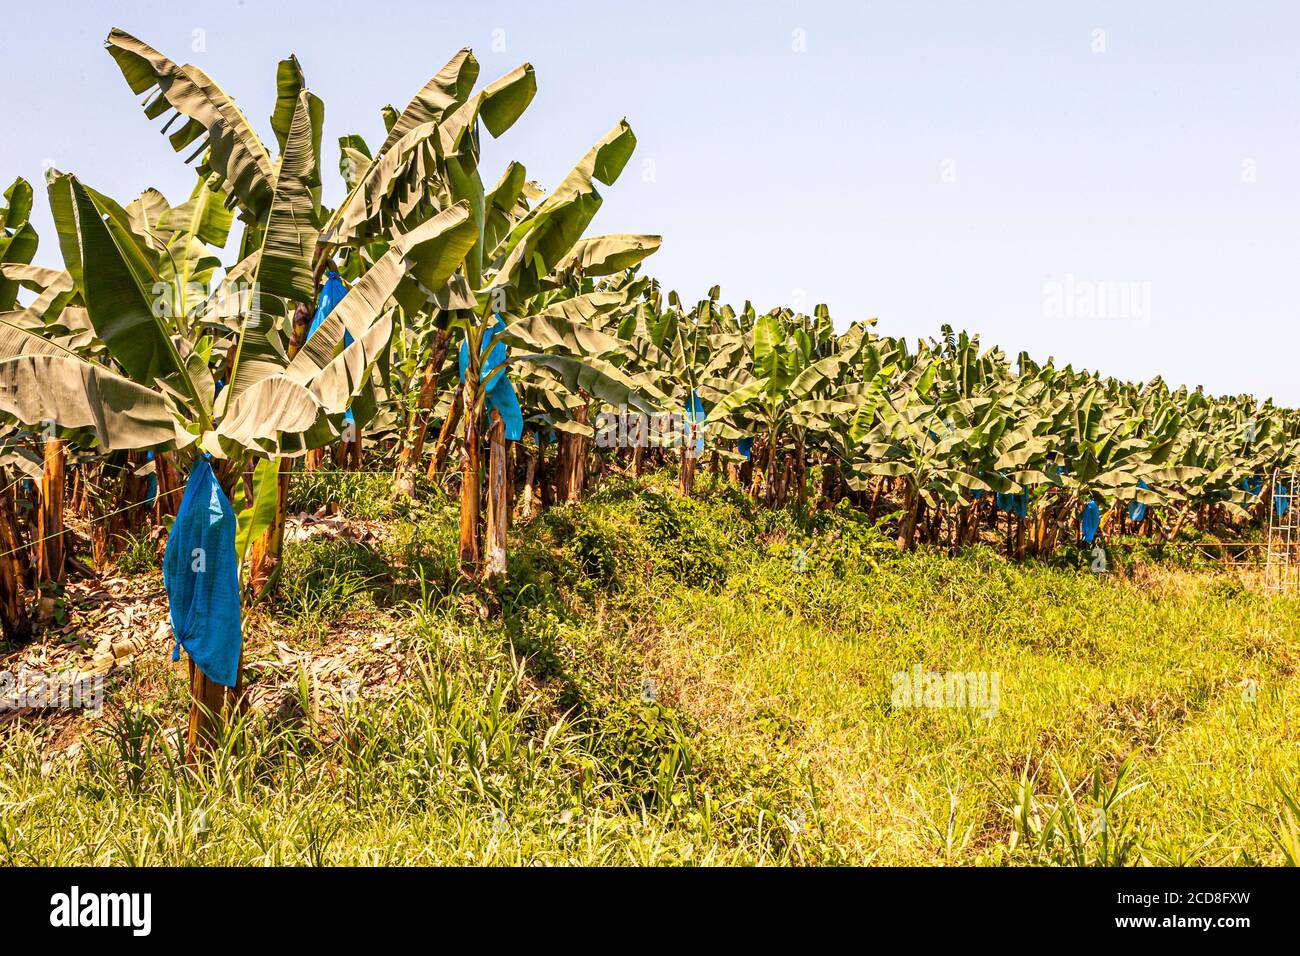 Banana plantation in Costa Rica Stock Photo